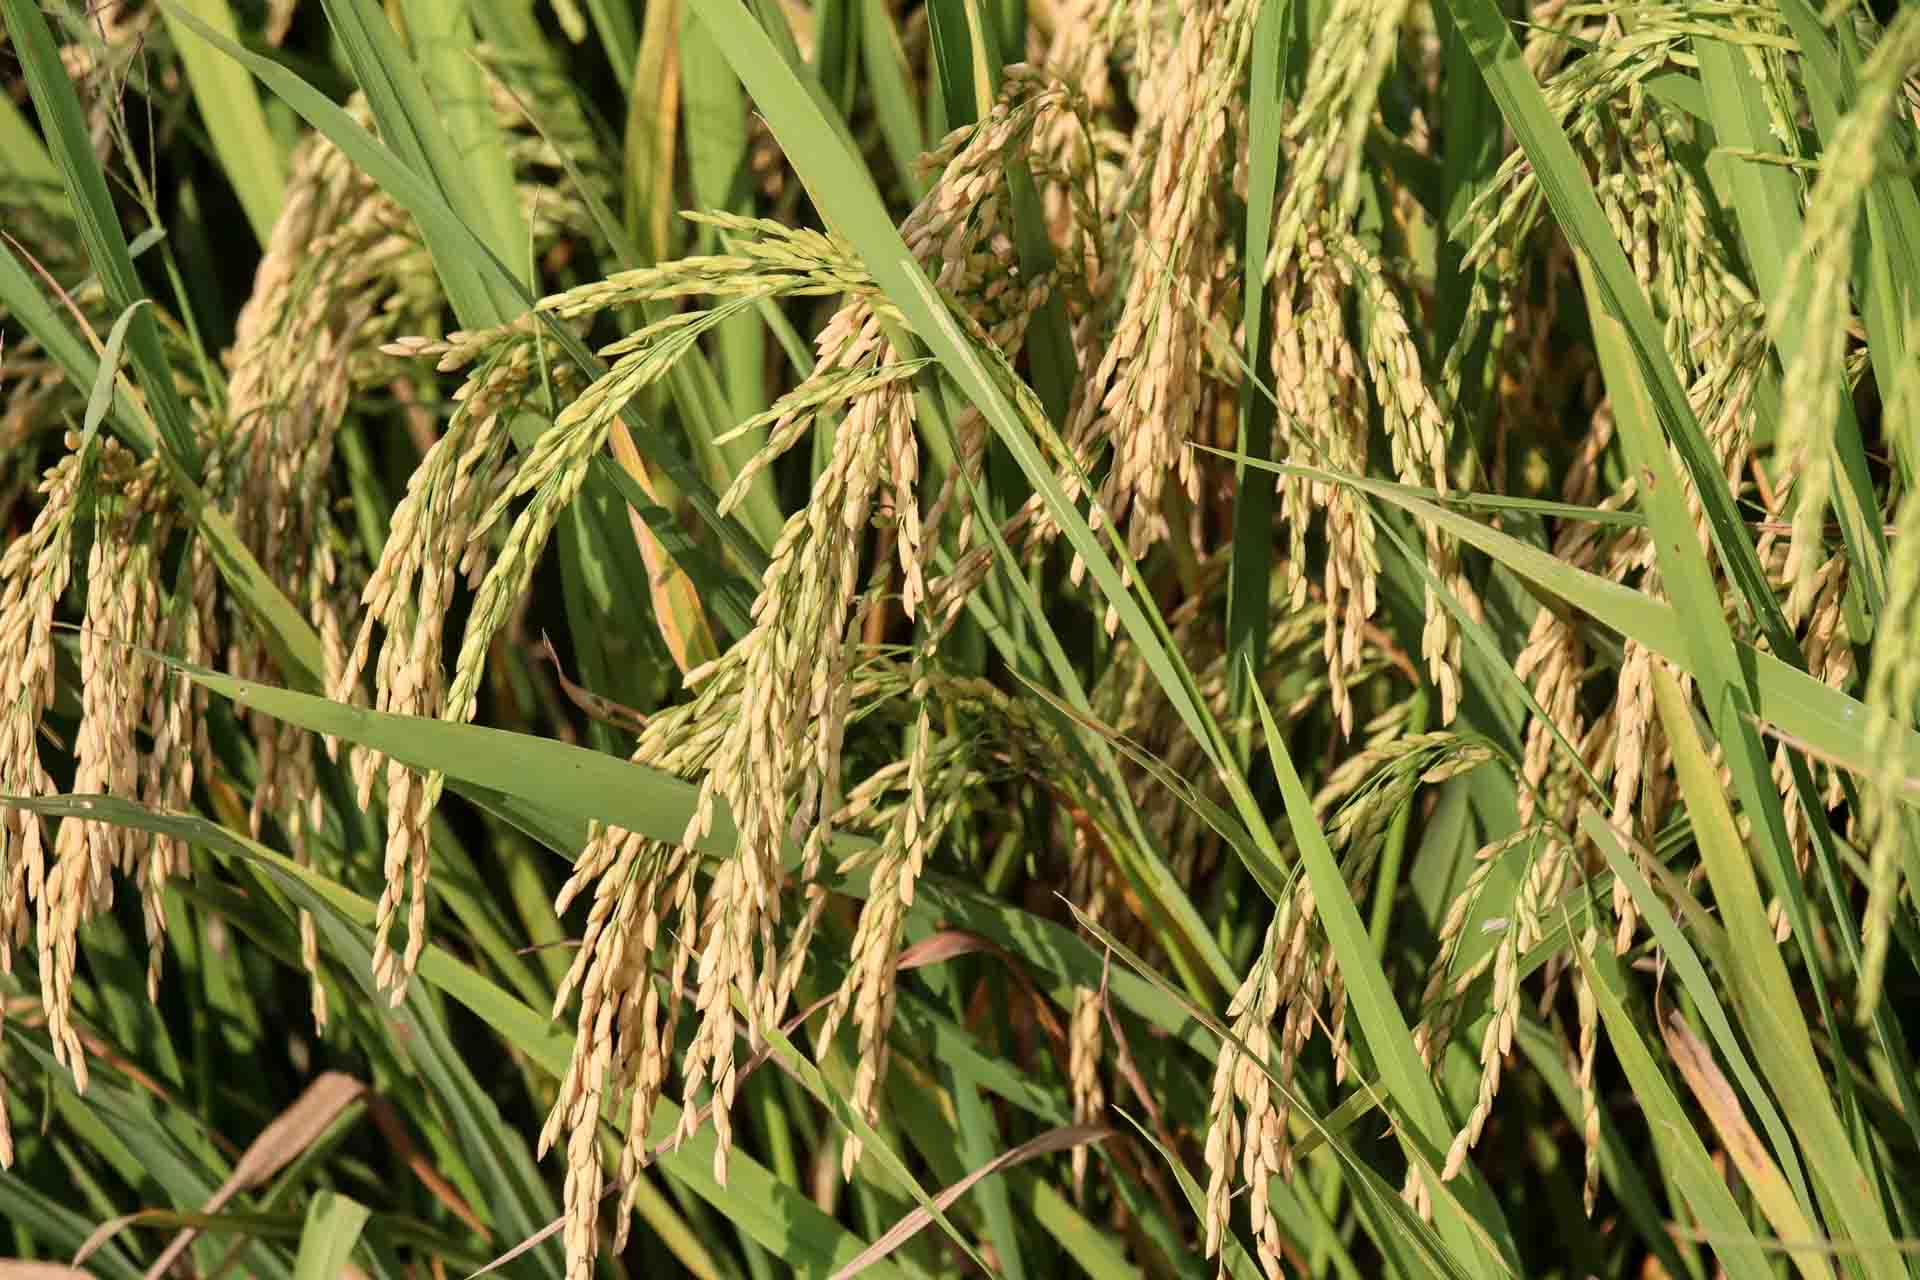 Cánh đồng lúa Kon Tum vào mùa gặt